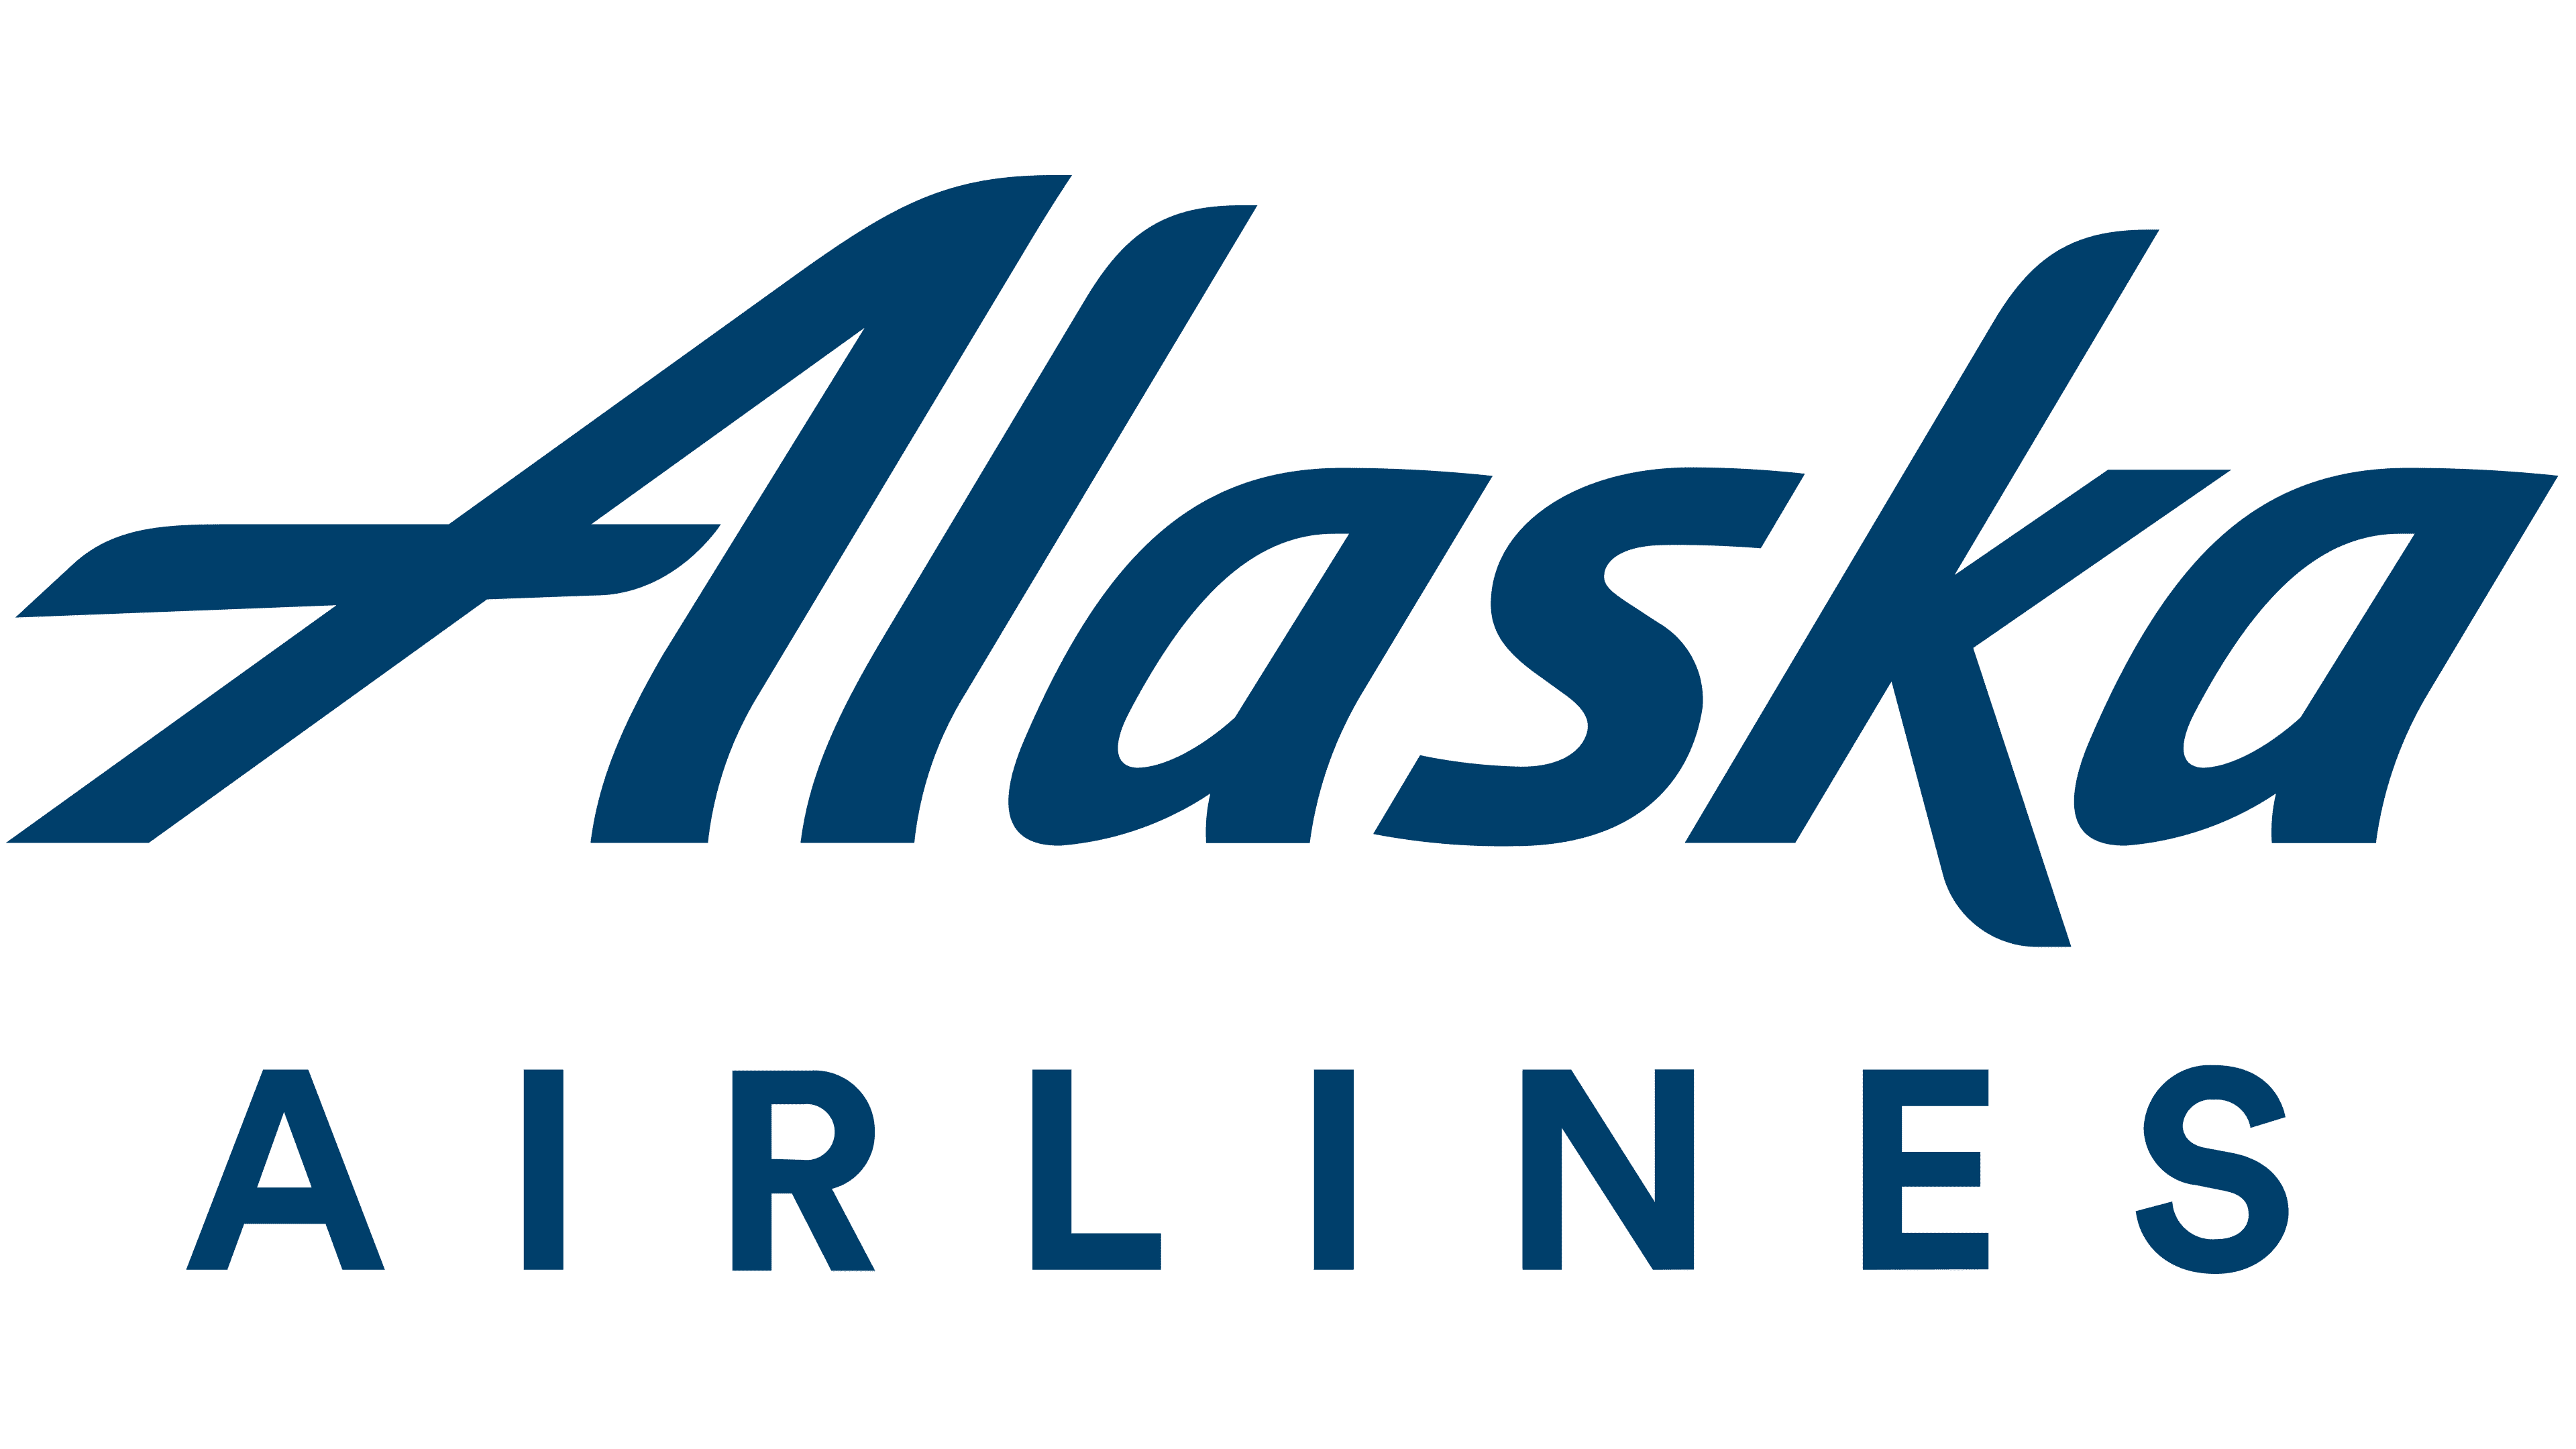 Alaska Airlines Lisbon Office